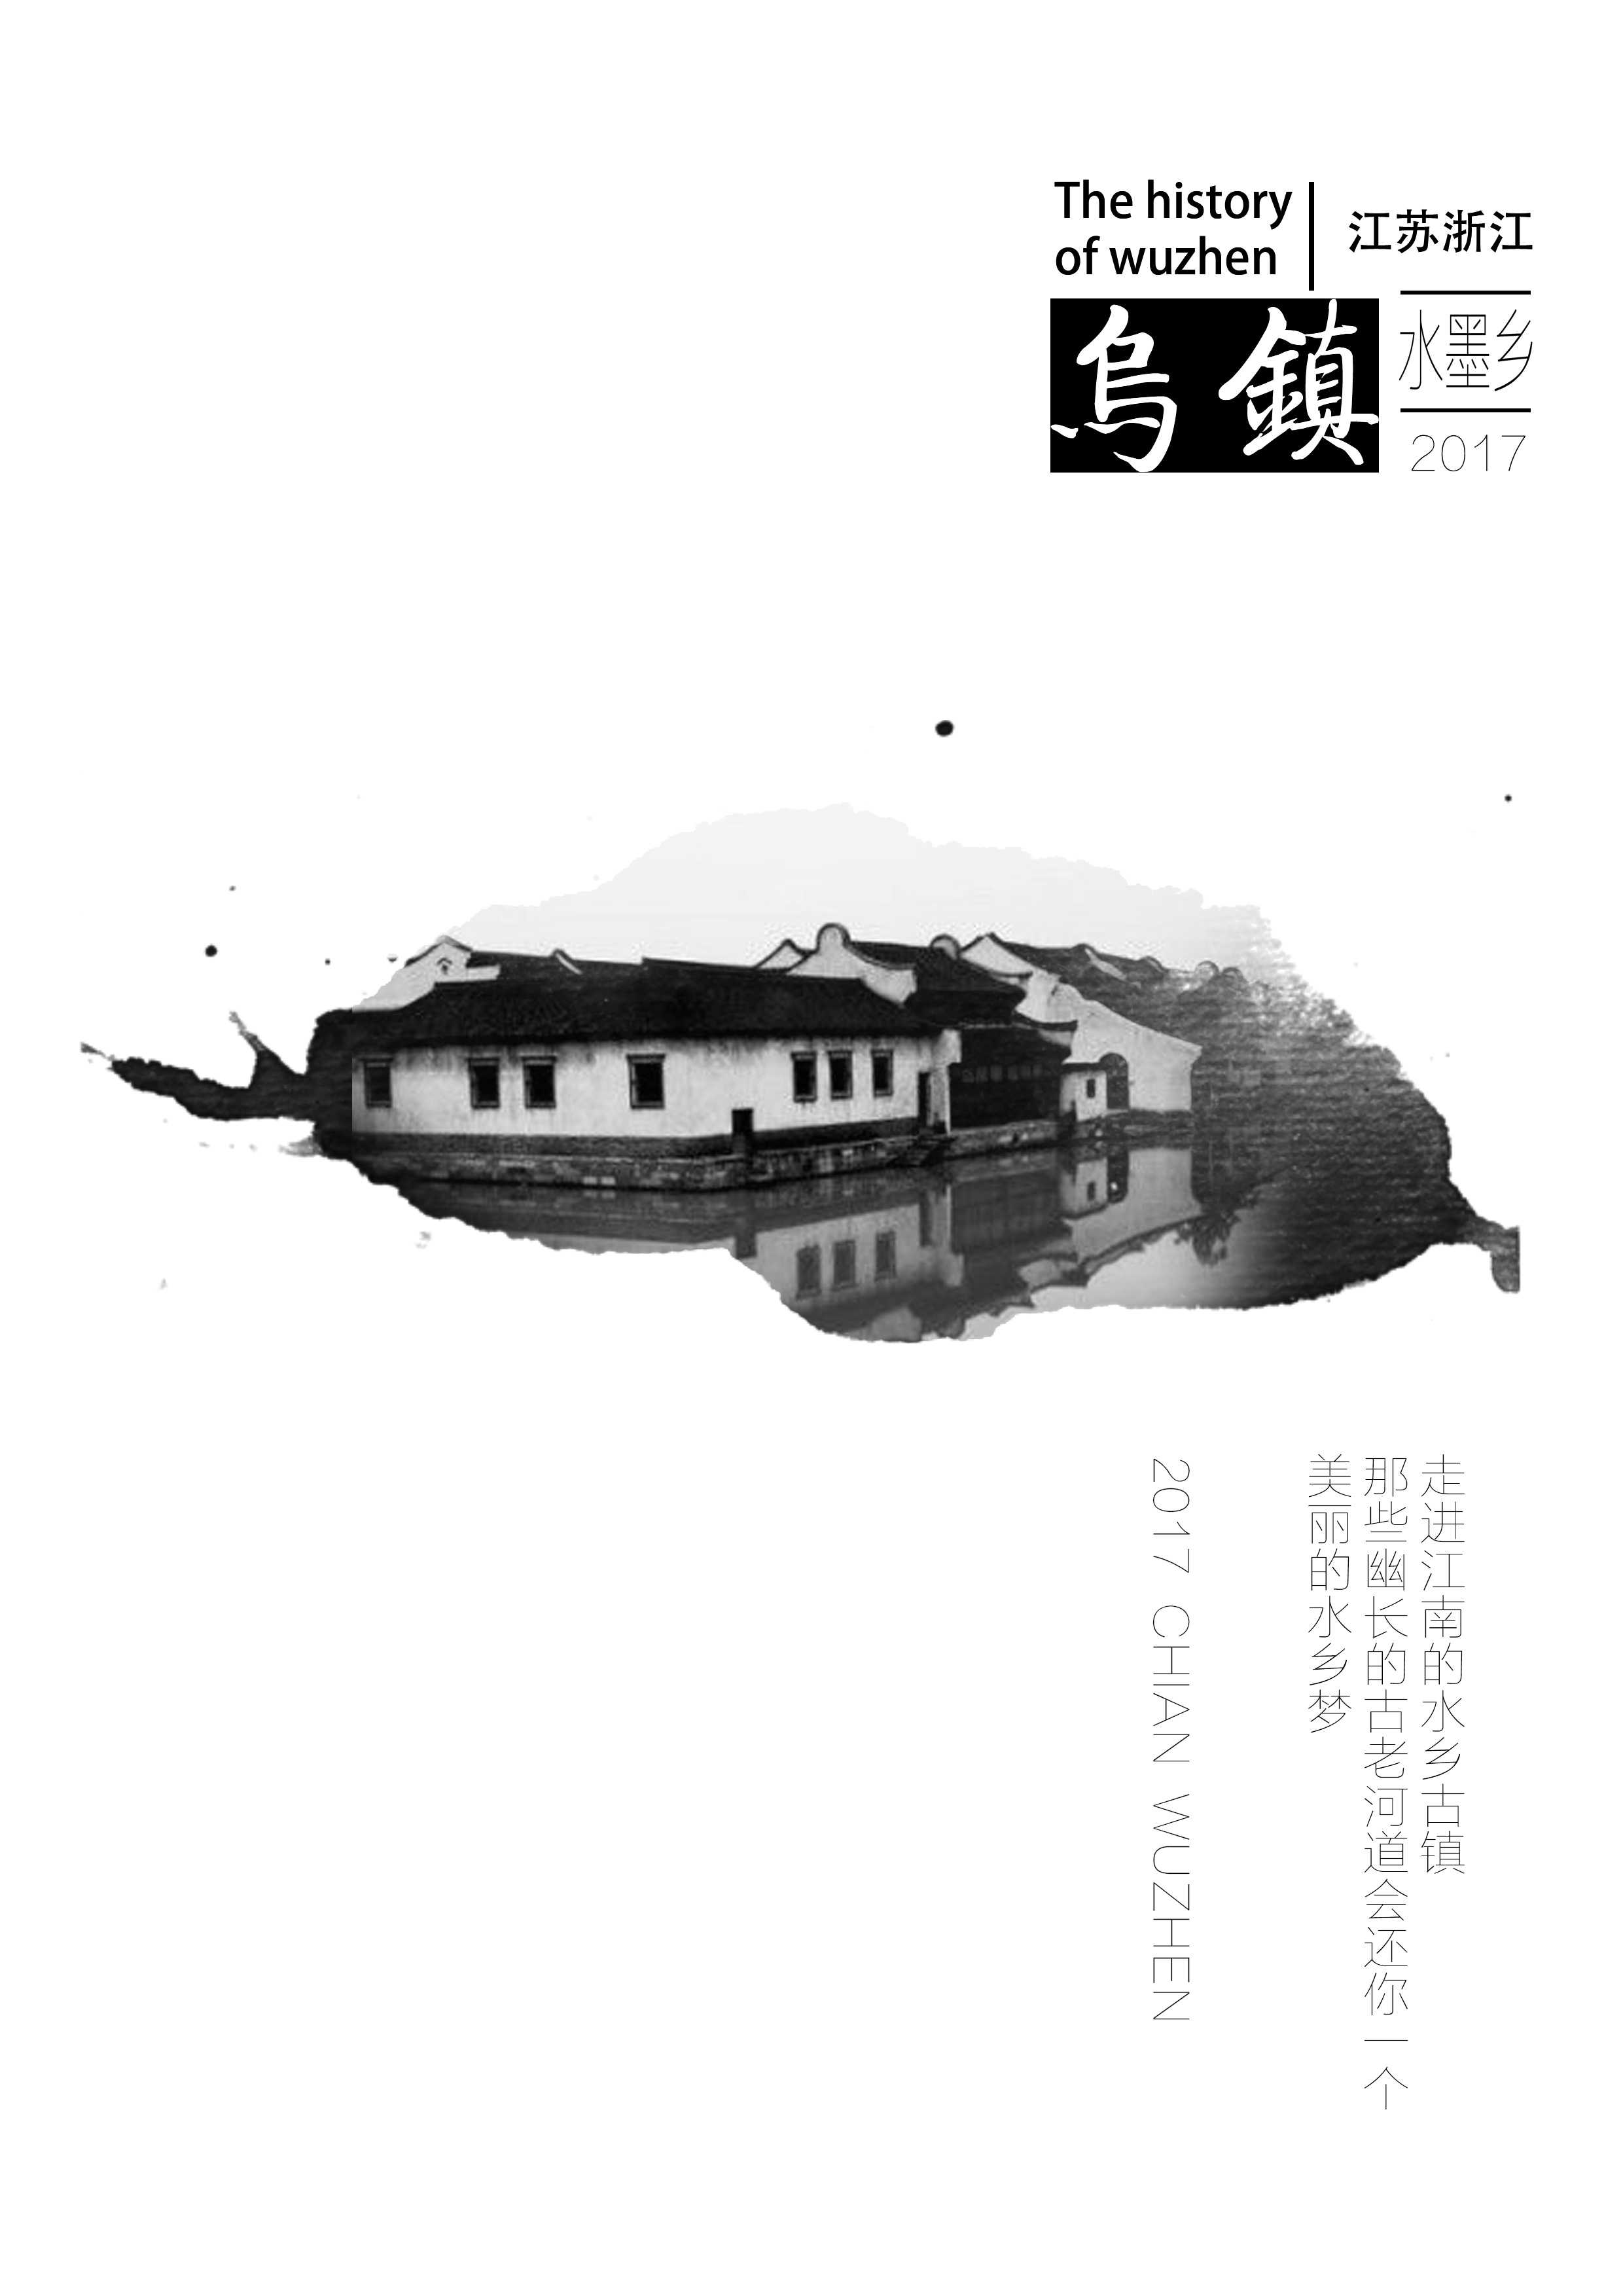 乌镇旅游广告国内宣传游海报图片素材-编号29213232-图行天下